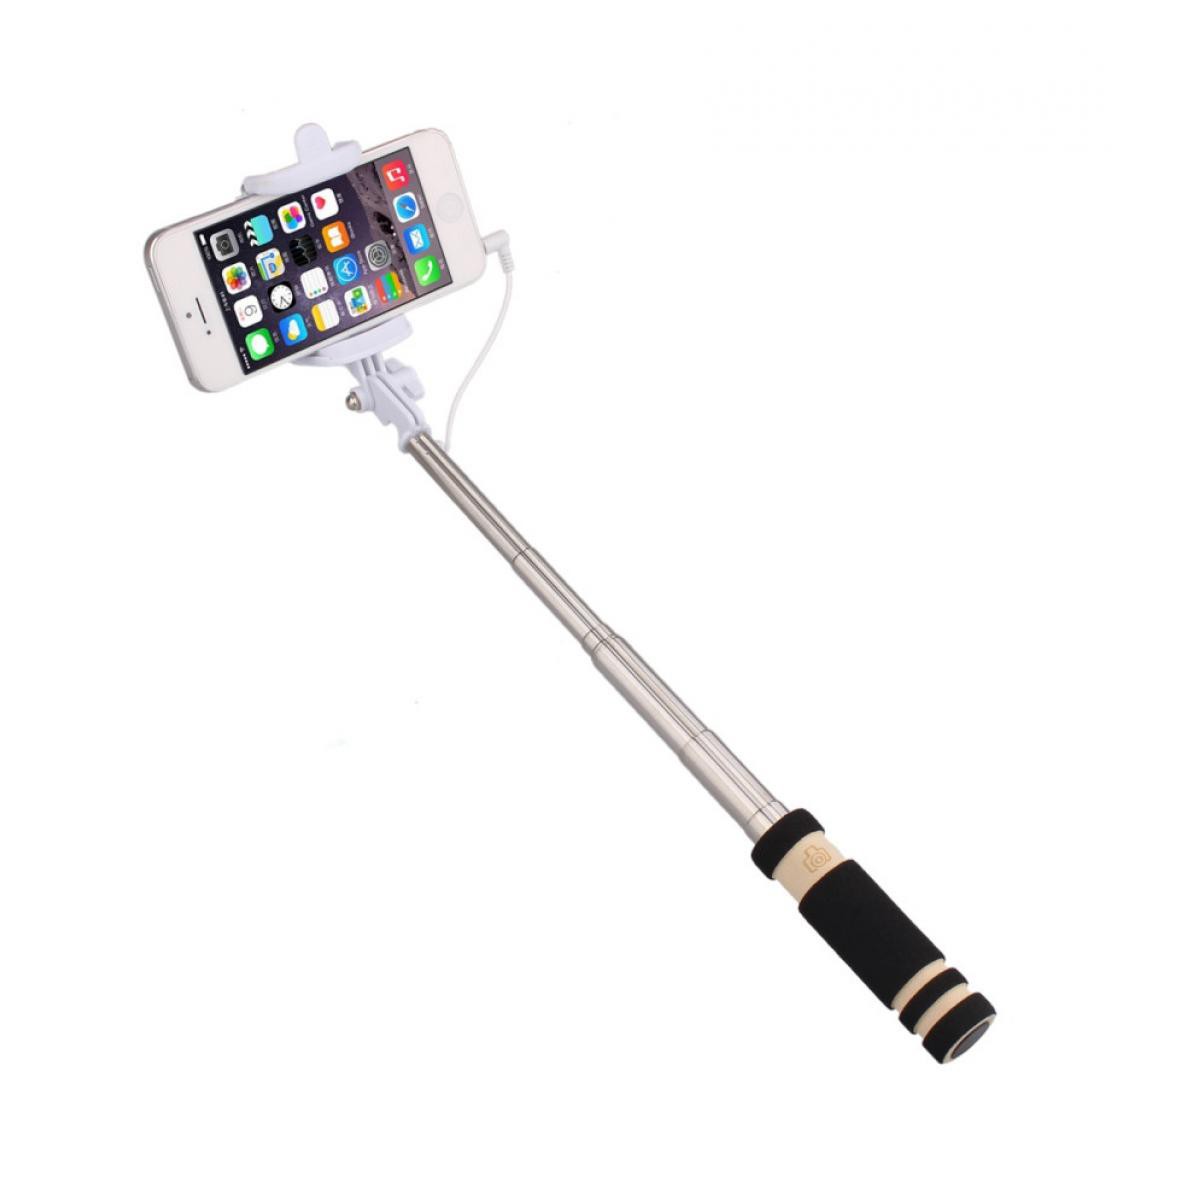 Shot - Mini Perche Selfie pour "ASUS ROG Phone 3" Smartphone avec Cable Jack Selfie Stick Android IOS Reglable Bouton Photo (NOIR) - Autres accessoires smartphone